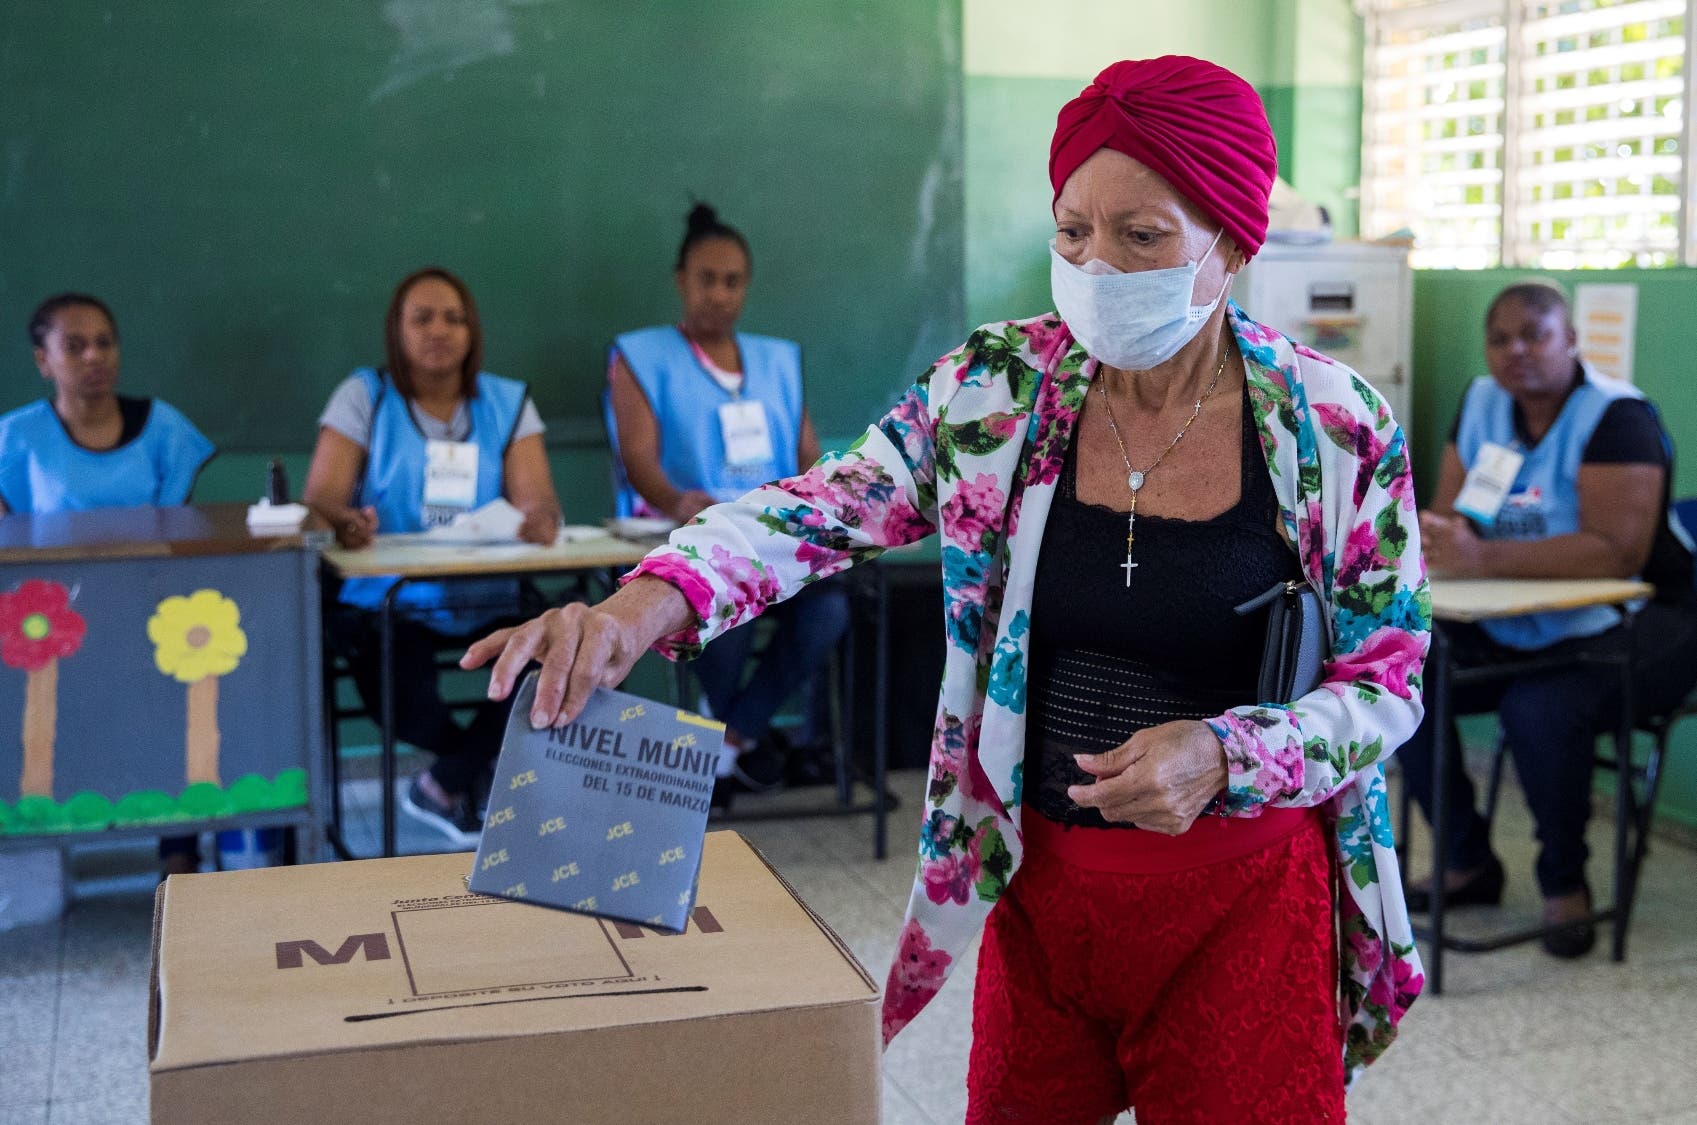 Las Medidas propuestas por Roberto Rosario para elecciones con pandemia